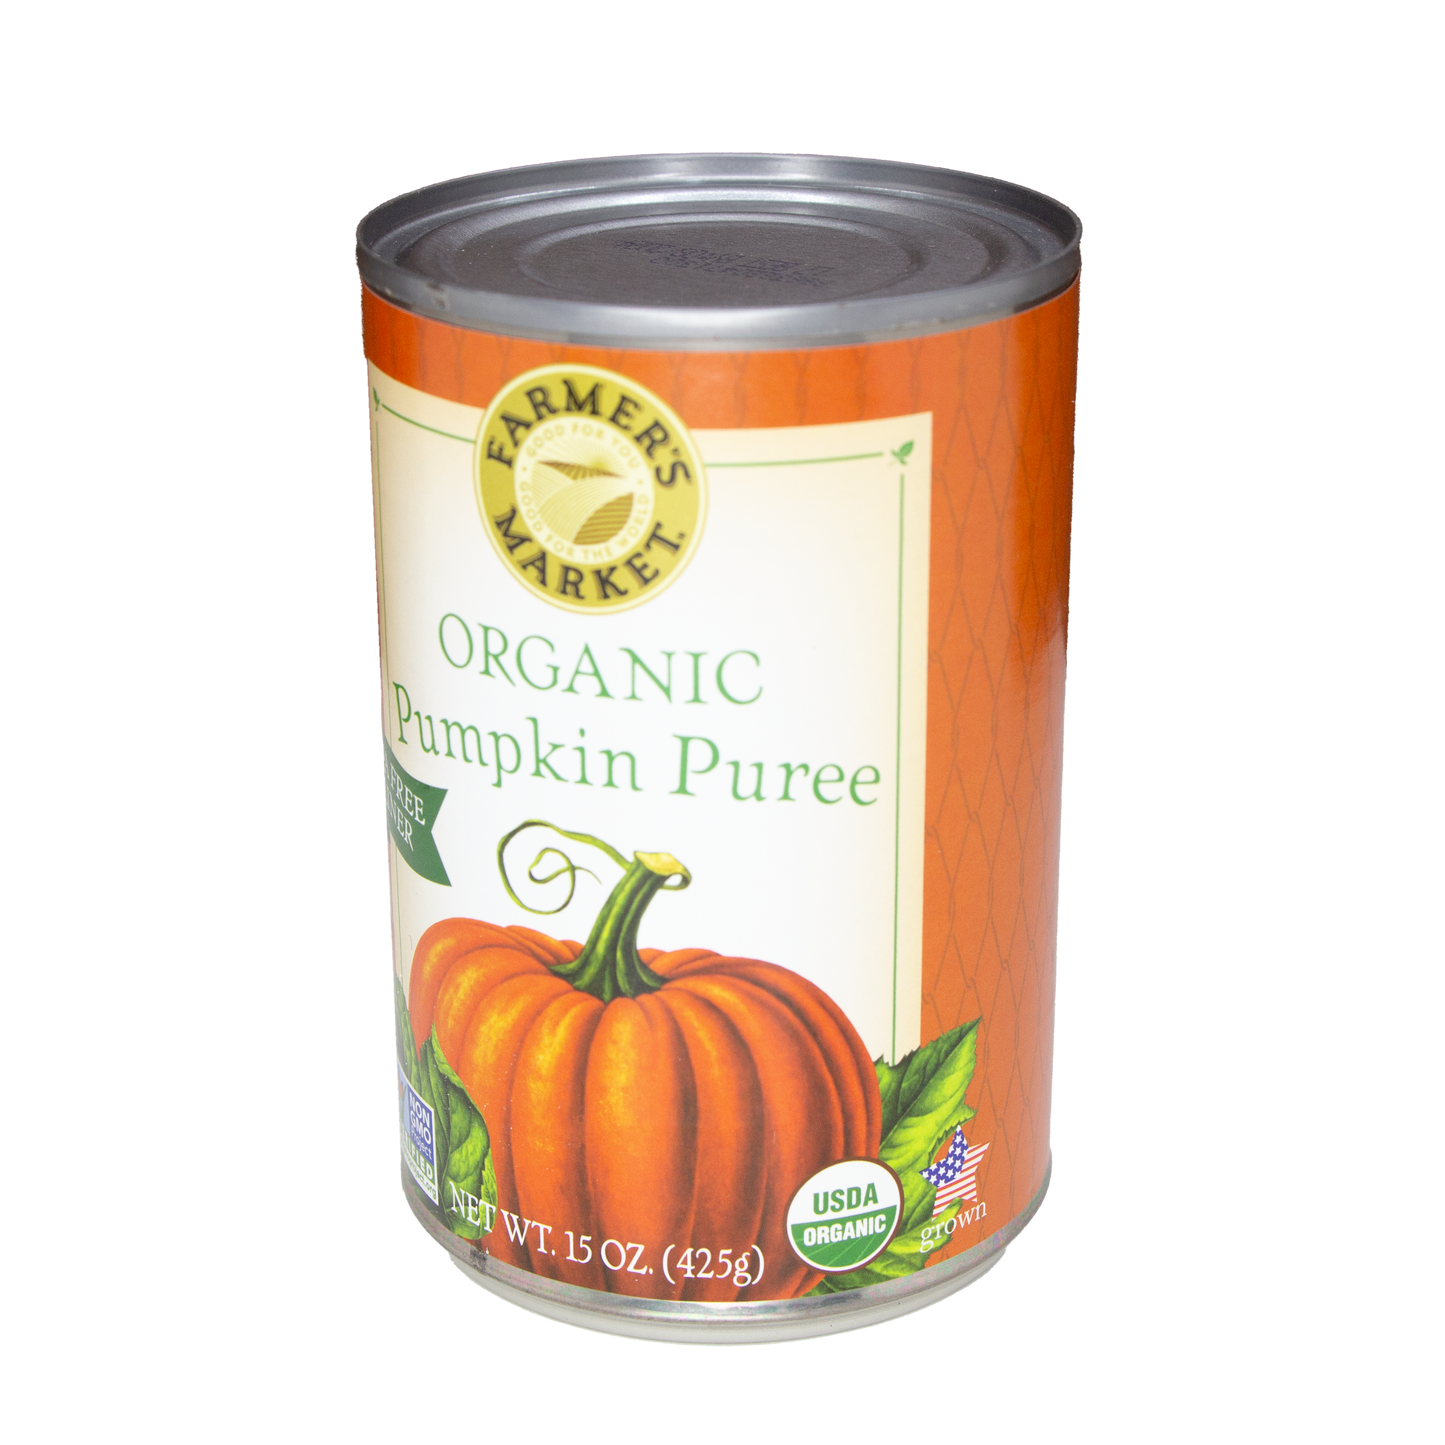 Farmer's Market - ORGANIC Pumpkin Puree